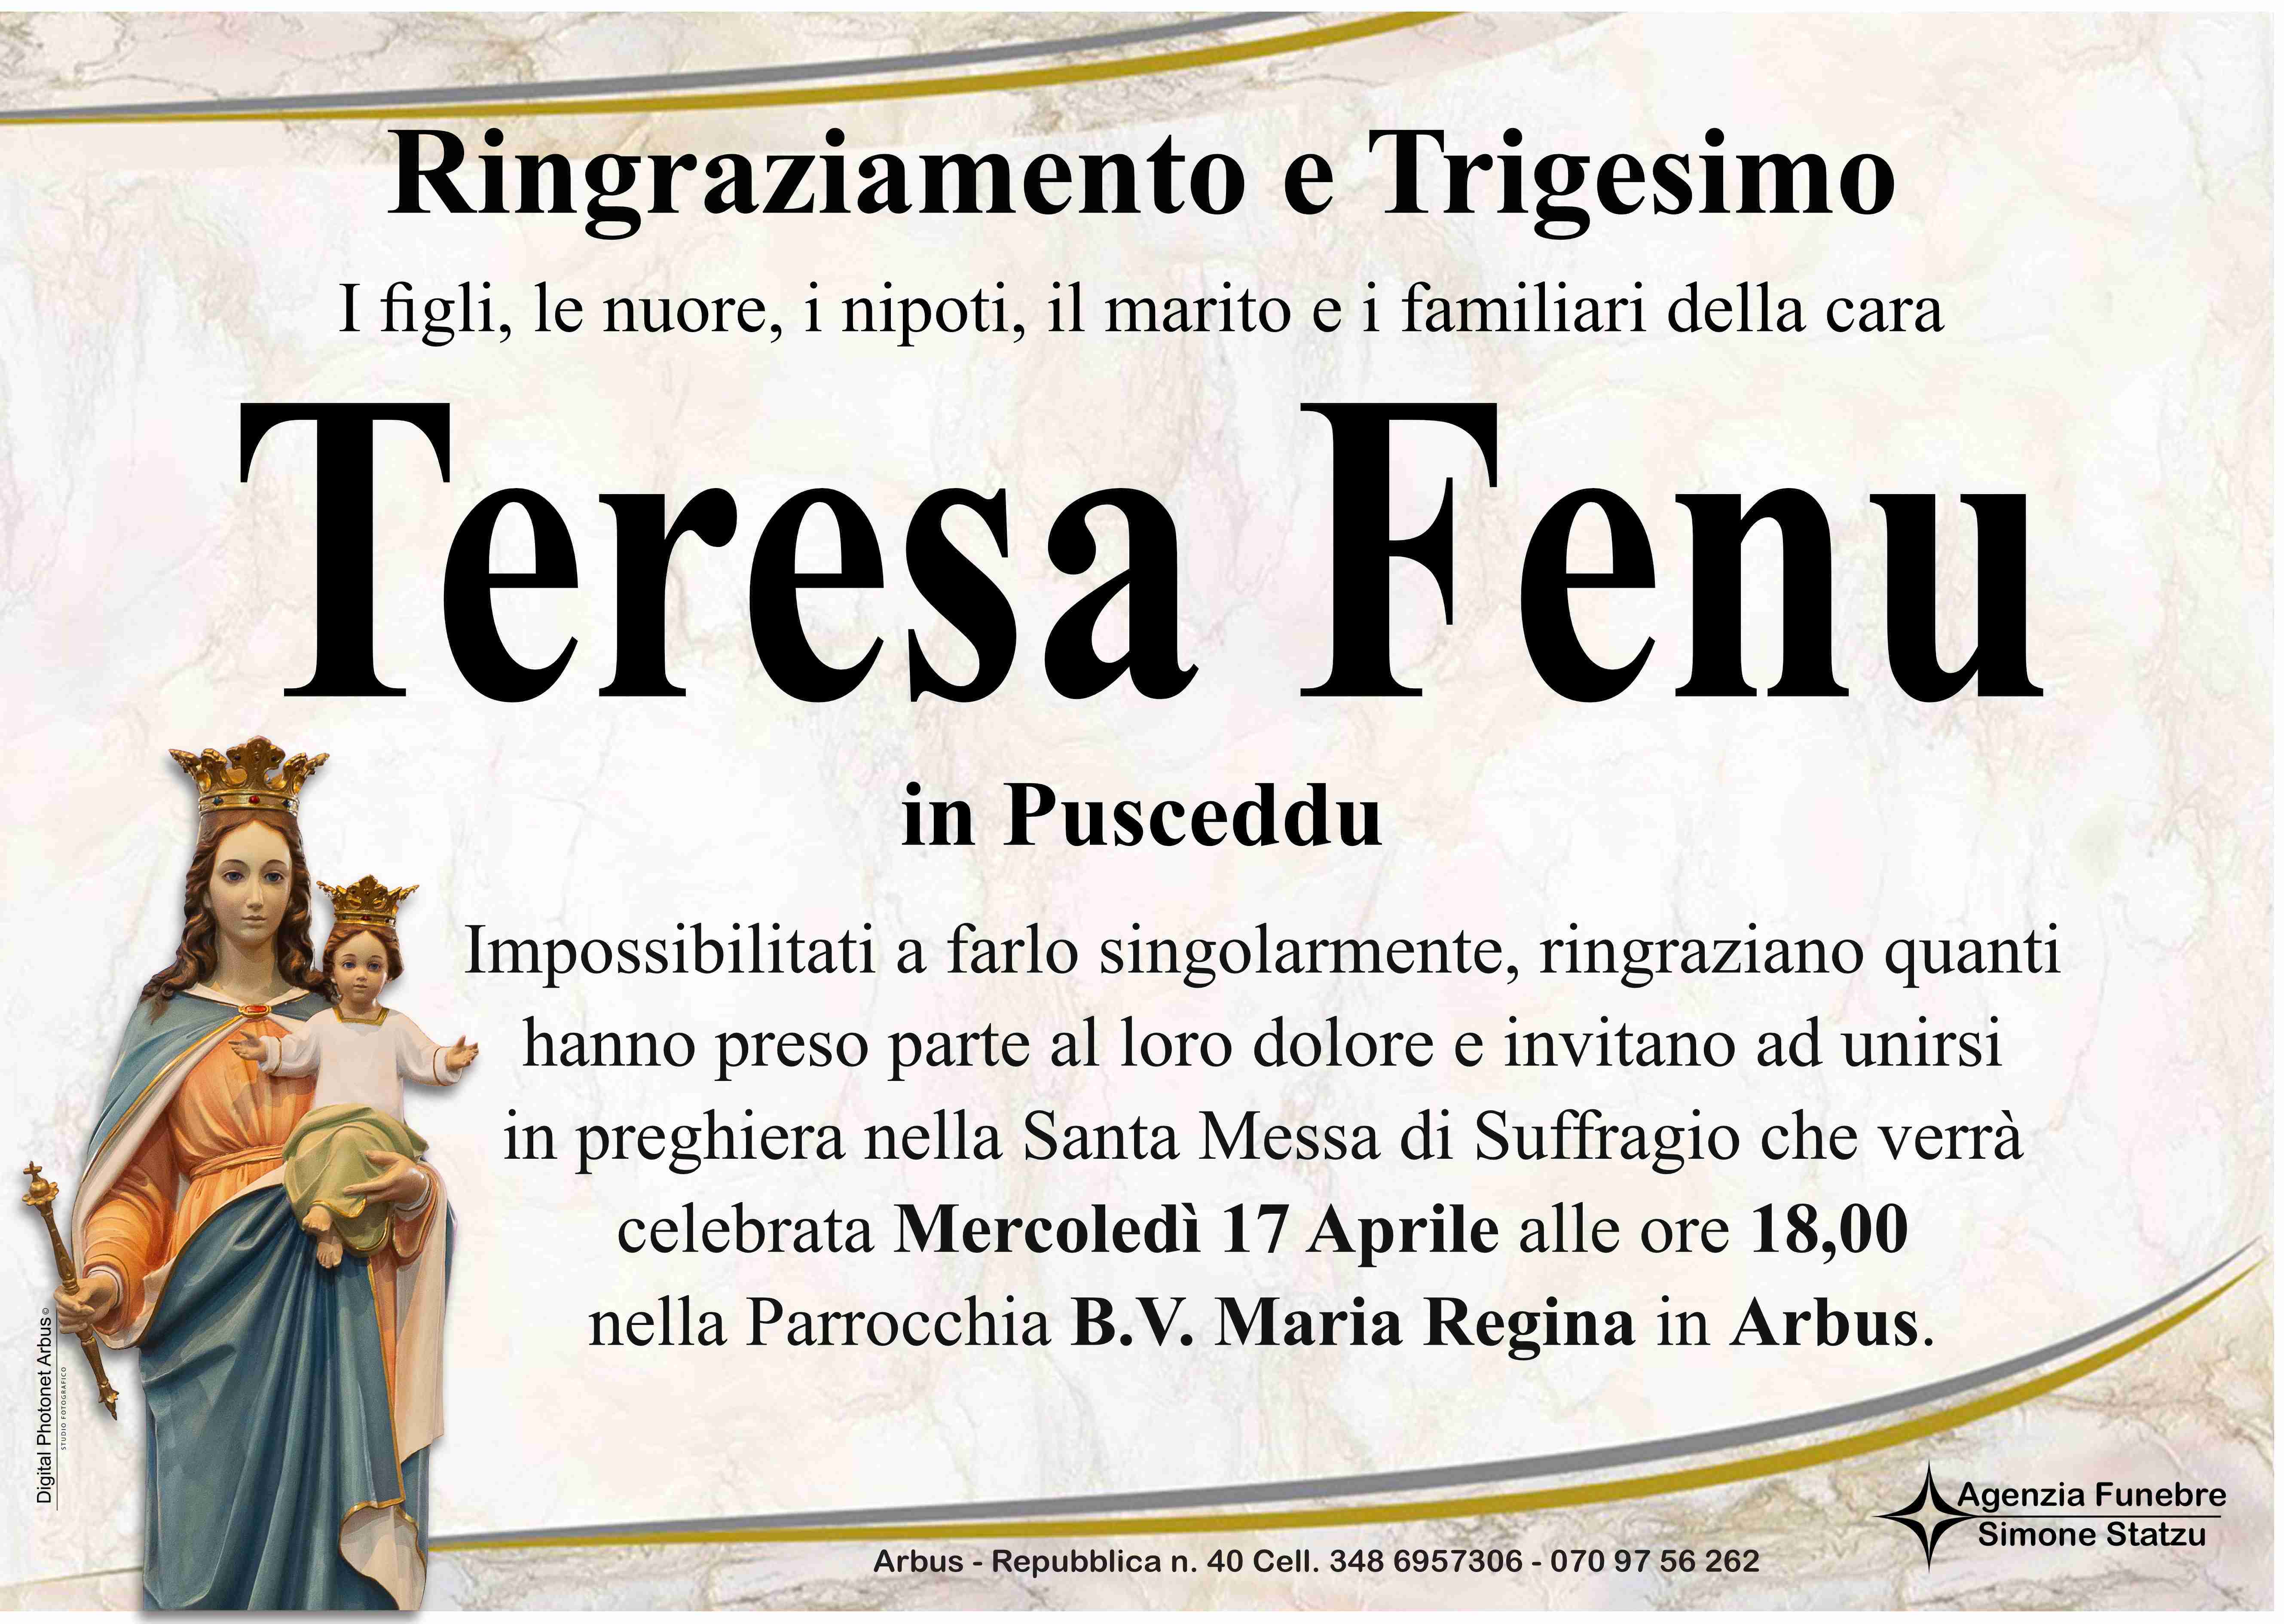 Teresa Fenu